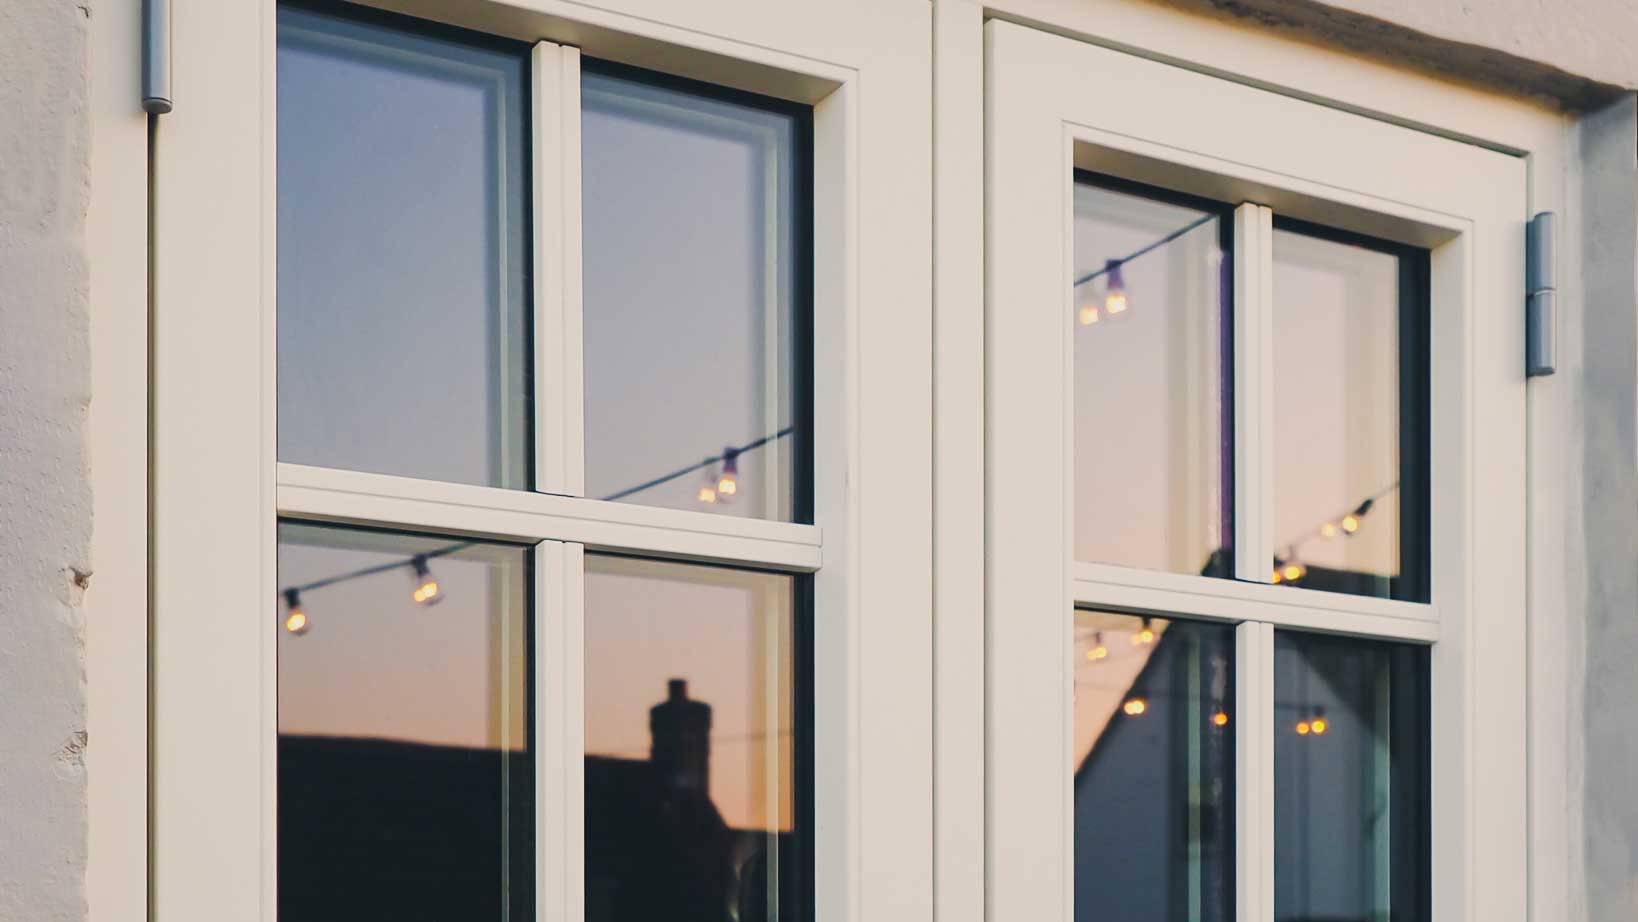 Bytt ut dine gamle vinduer med nye energivinduer image